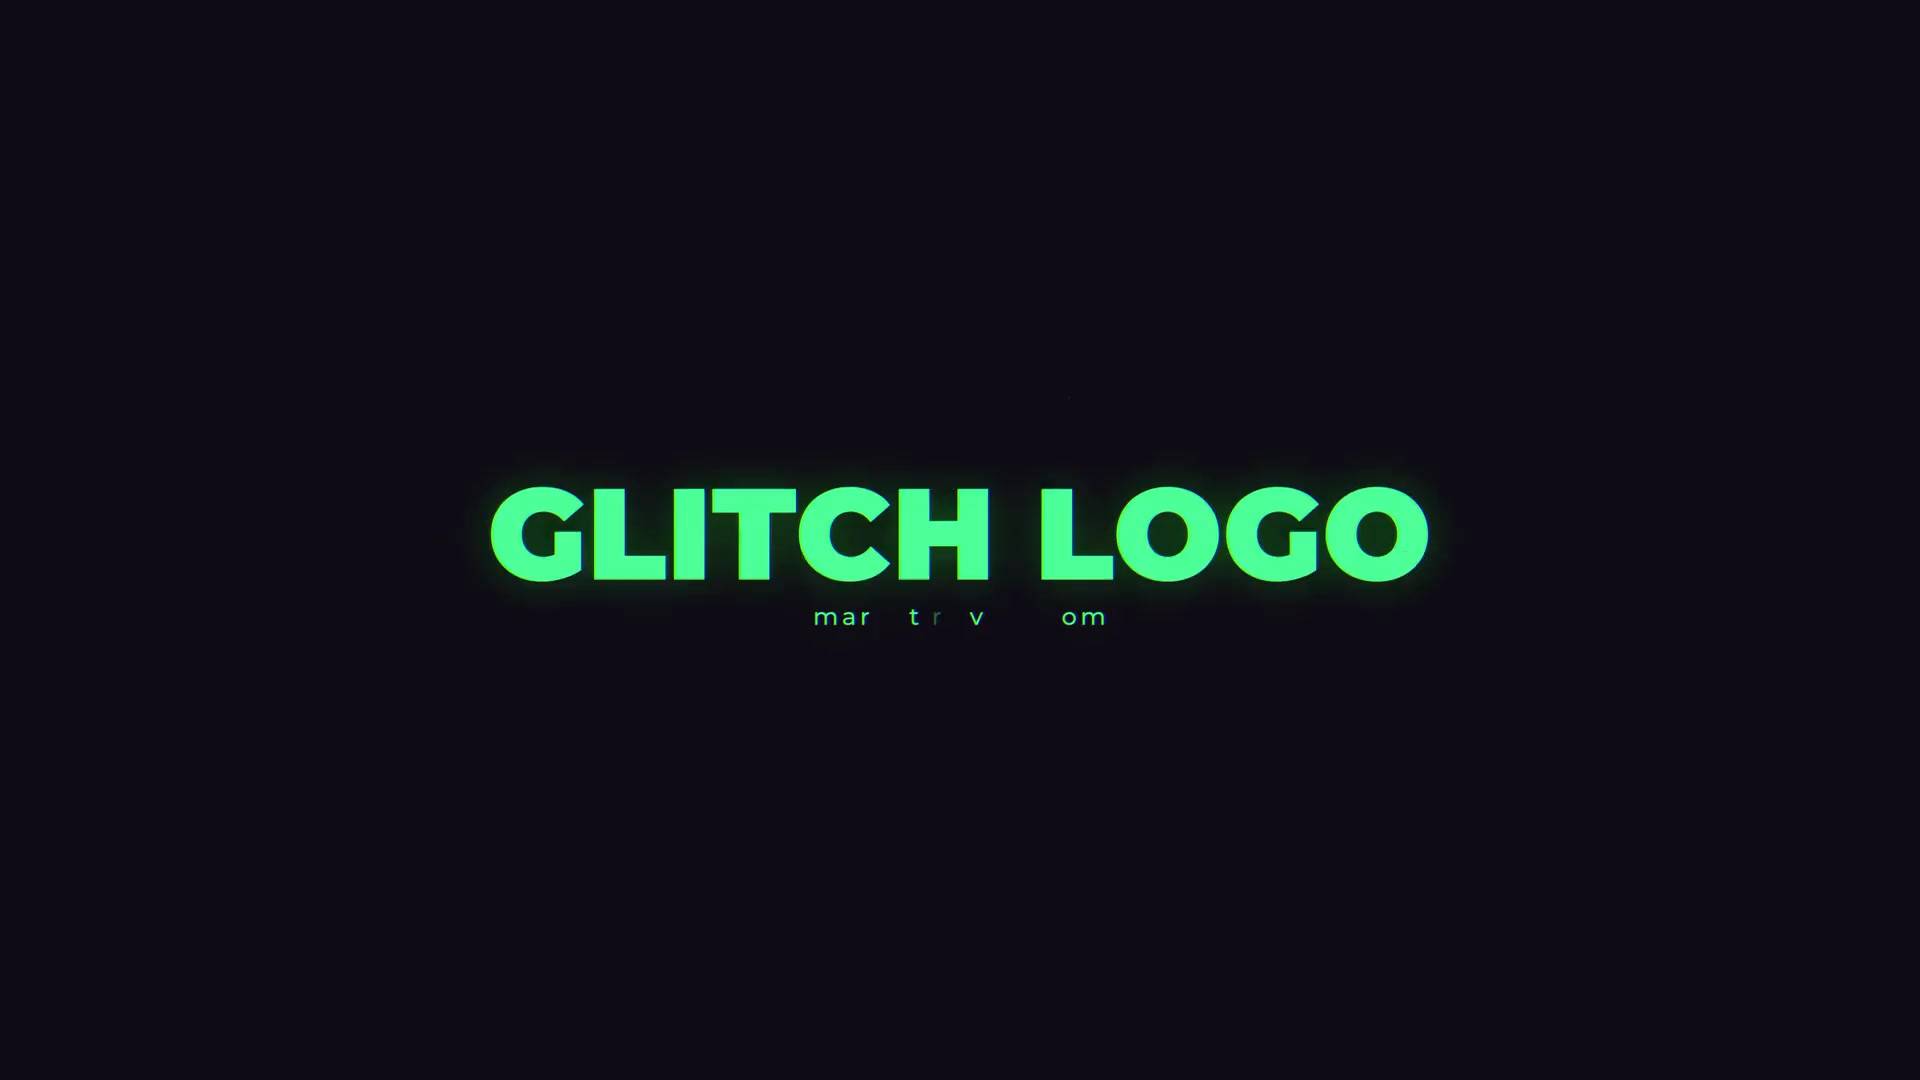 Glitch Logo Mogrt Videohive 26716653 Premiere Pro Image 4